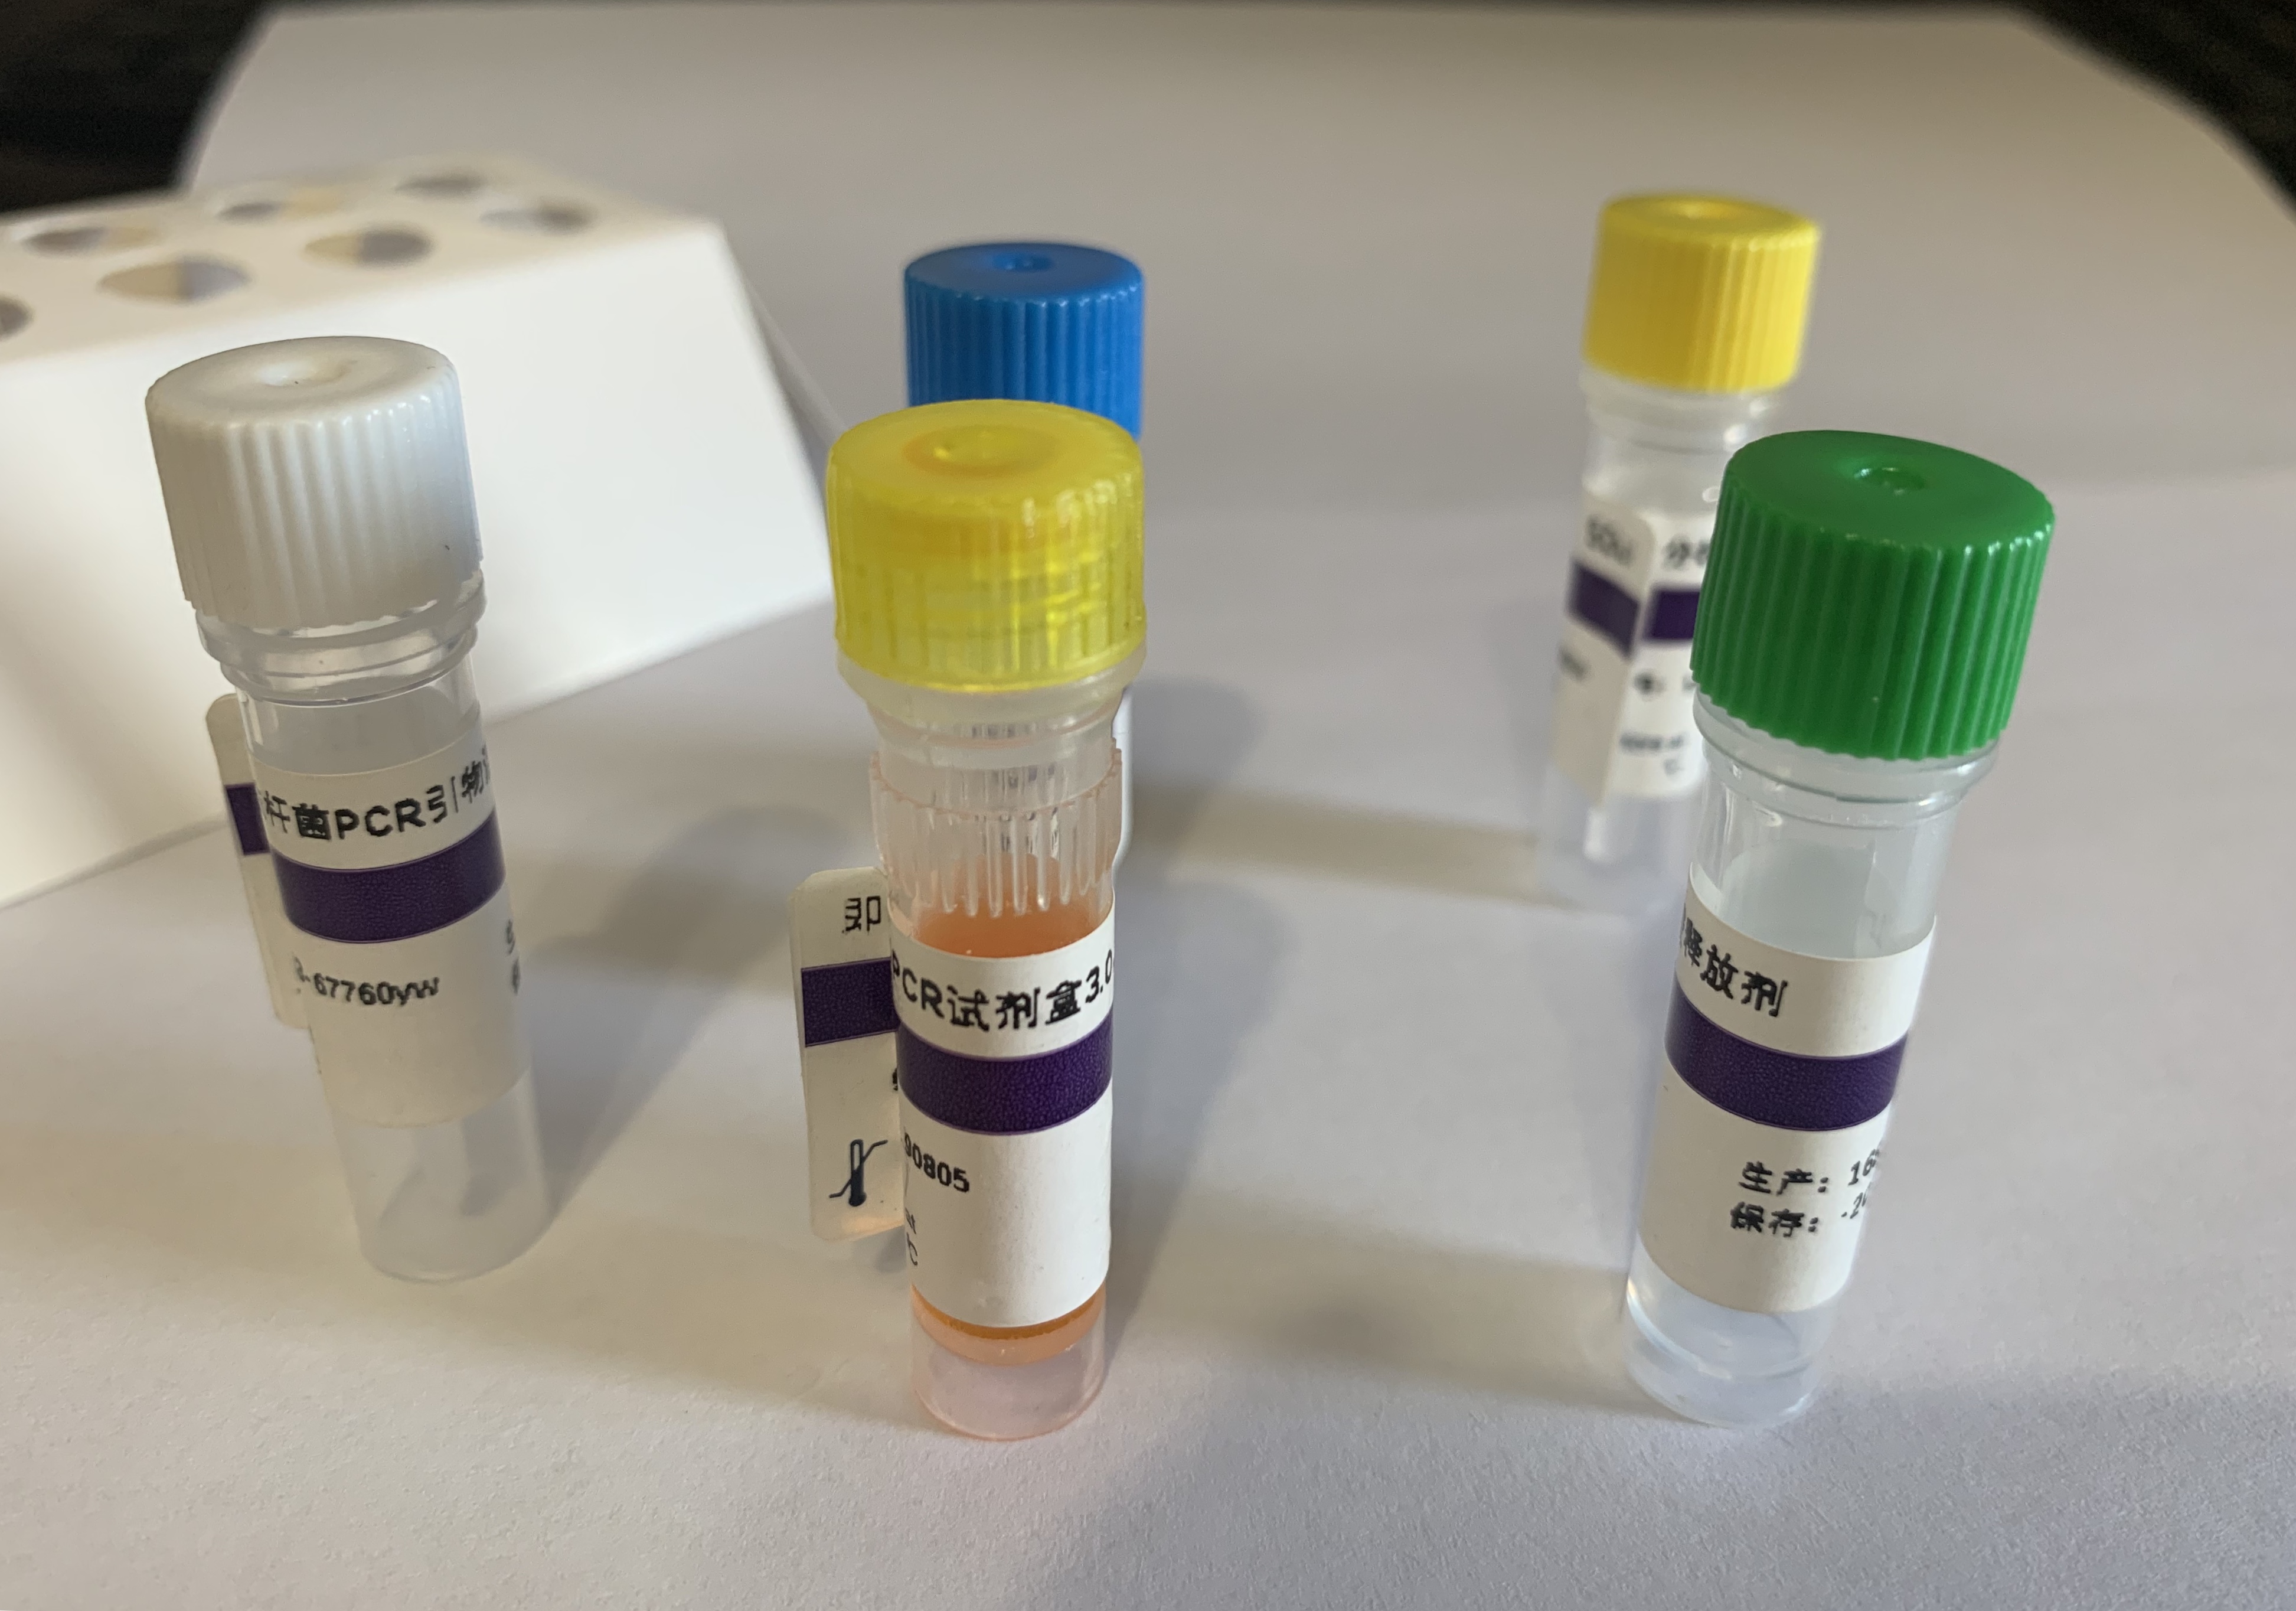 马传染性贫血病毒RT-PCR试剂盒